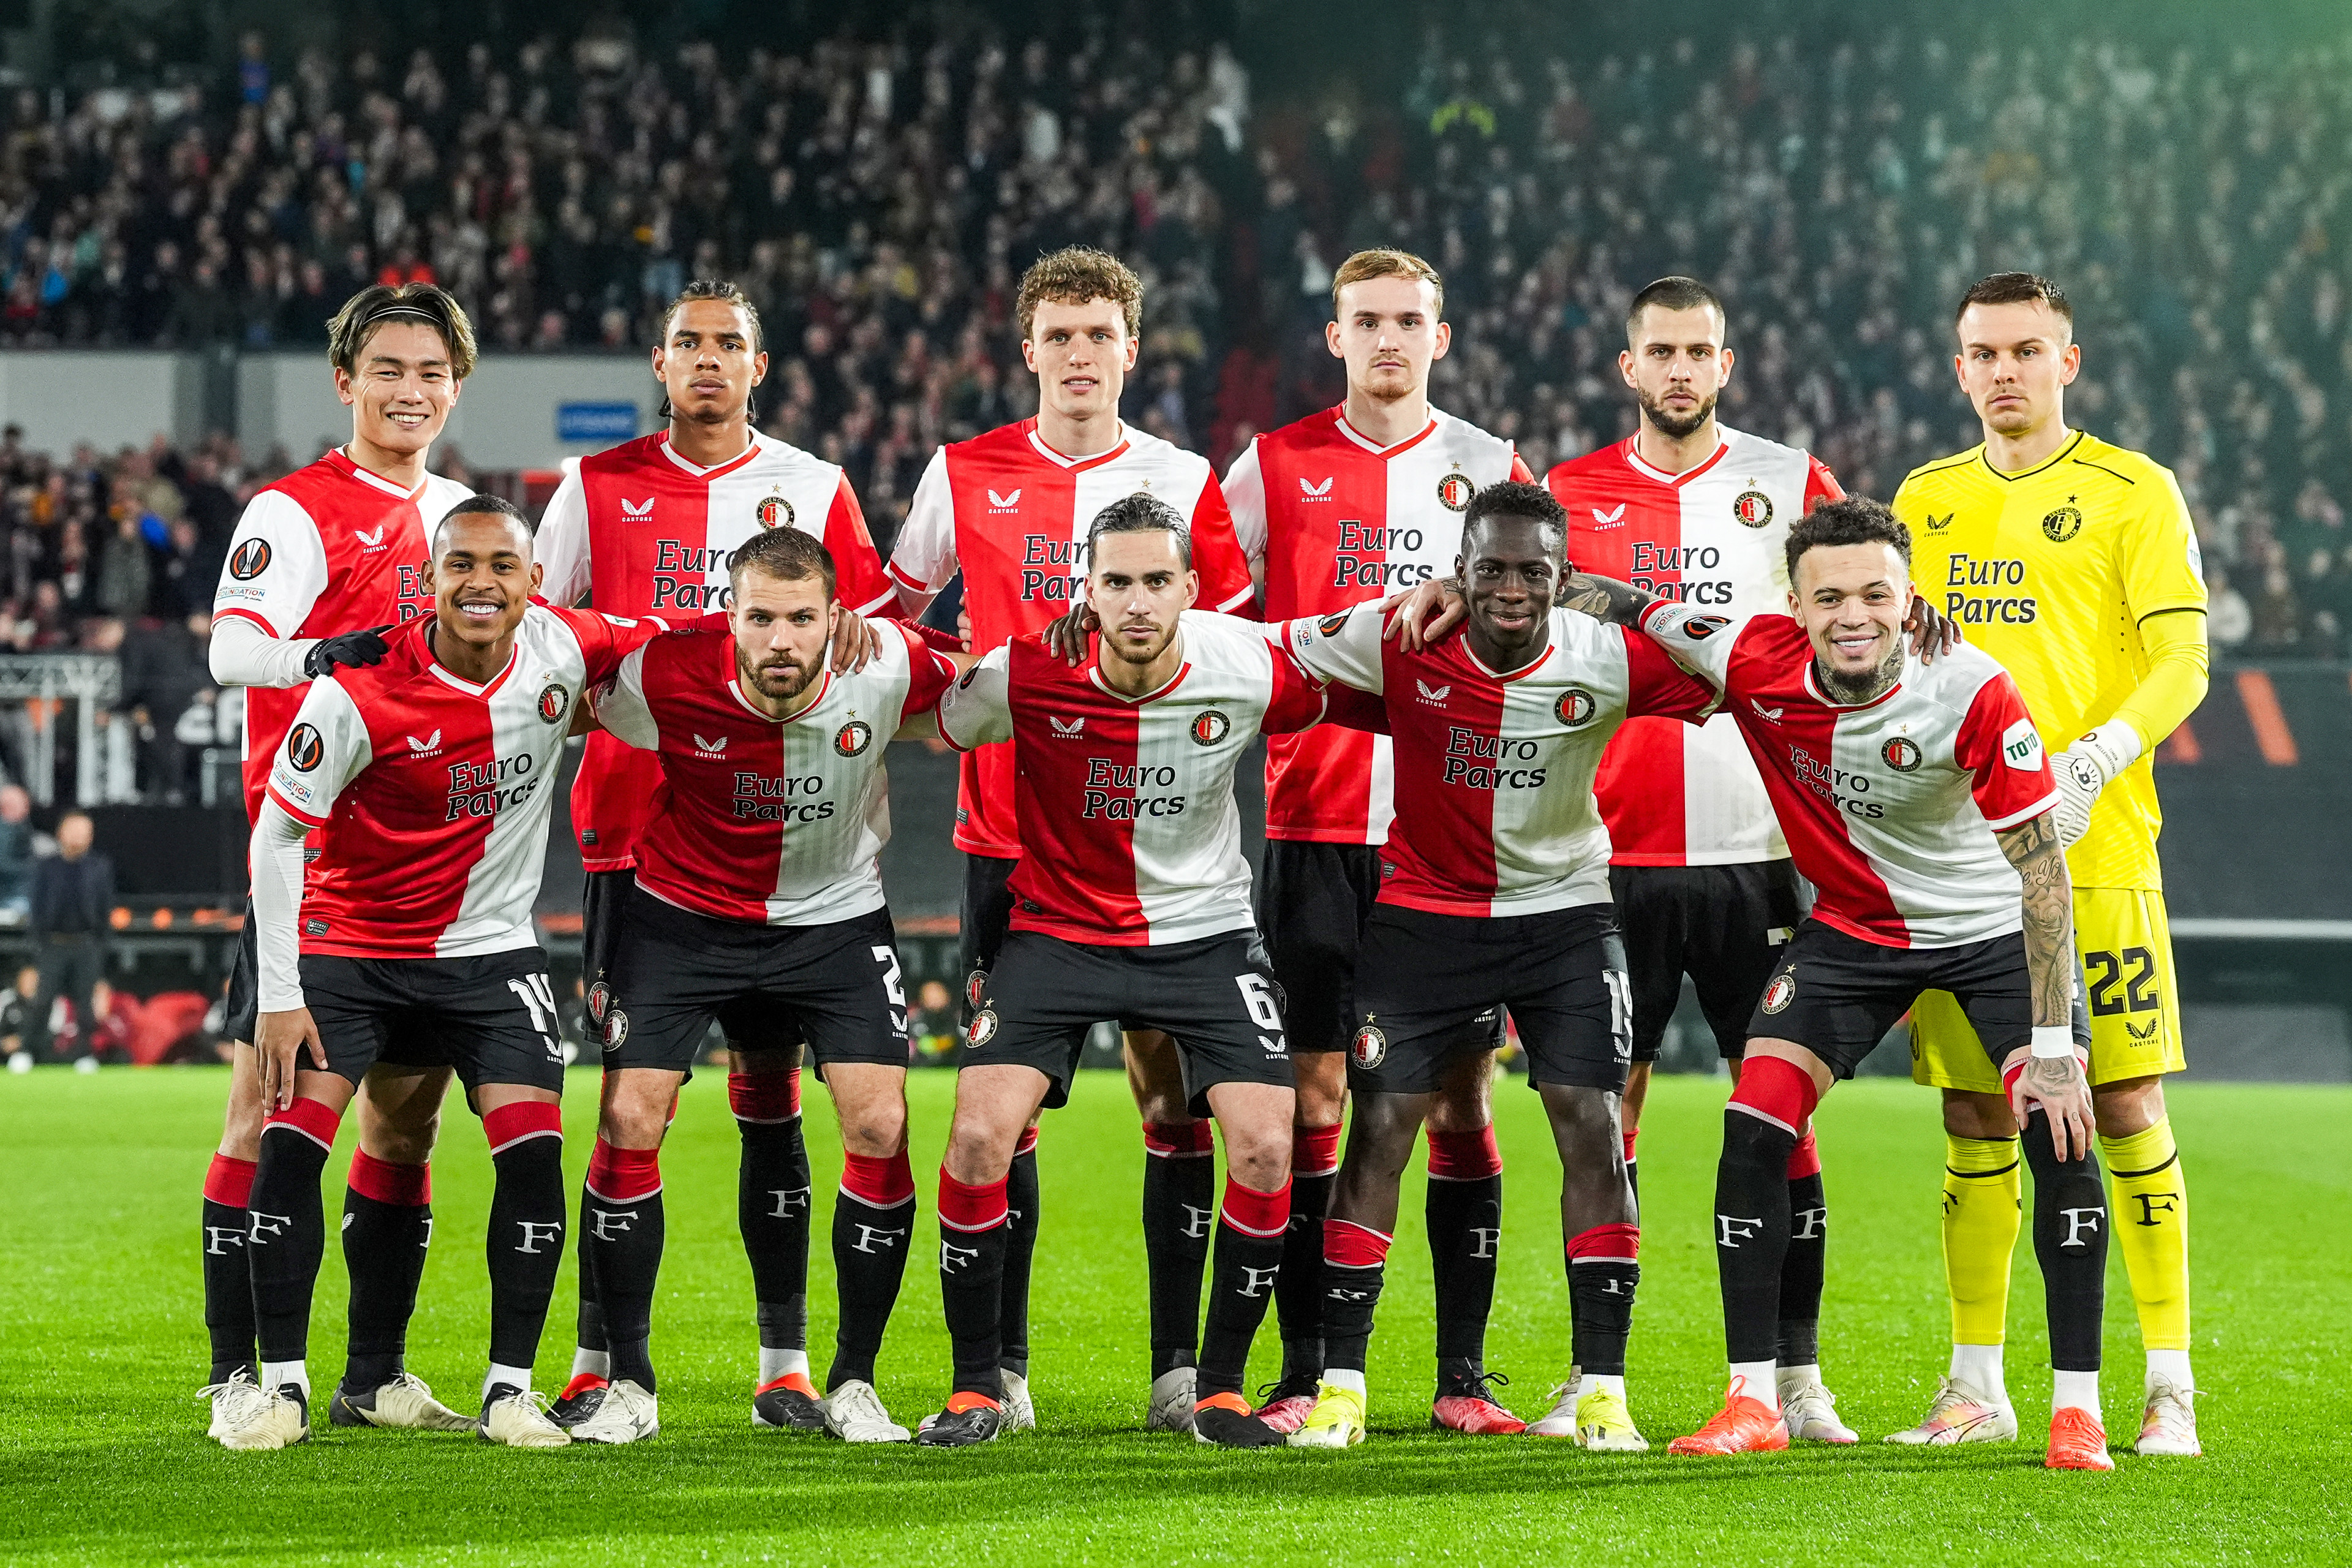 Beoordeel de spelers voor de wedstrijd Feyenoord - AS Roma (1-1)